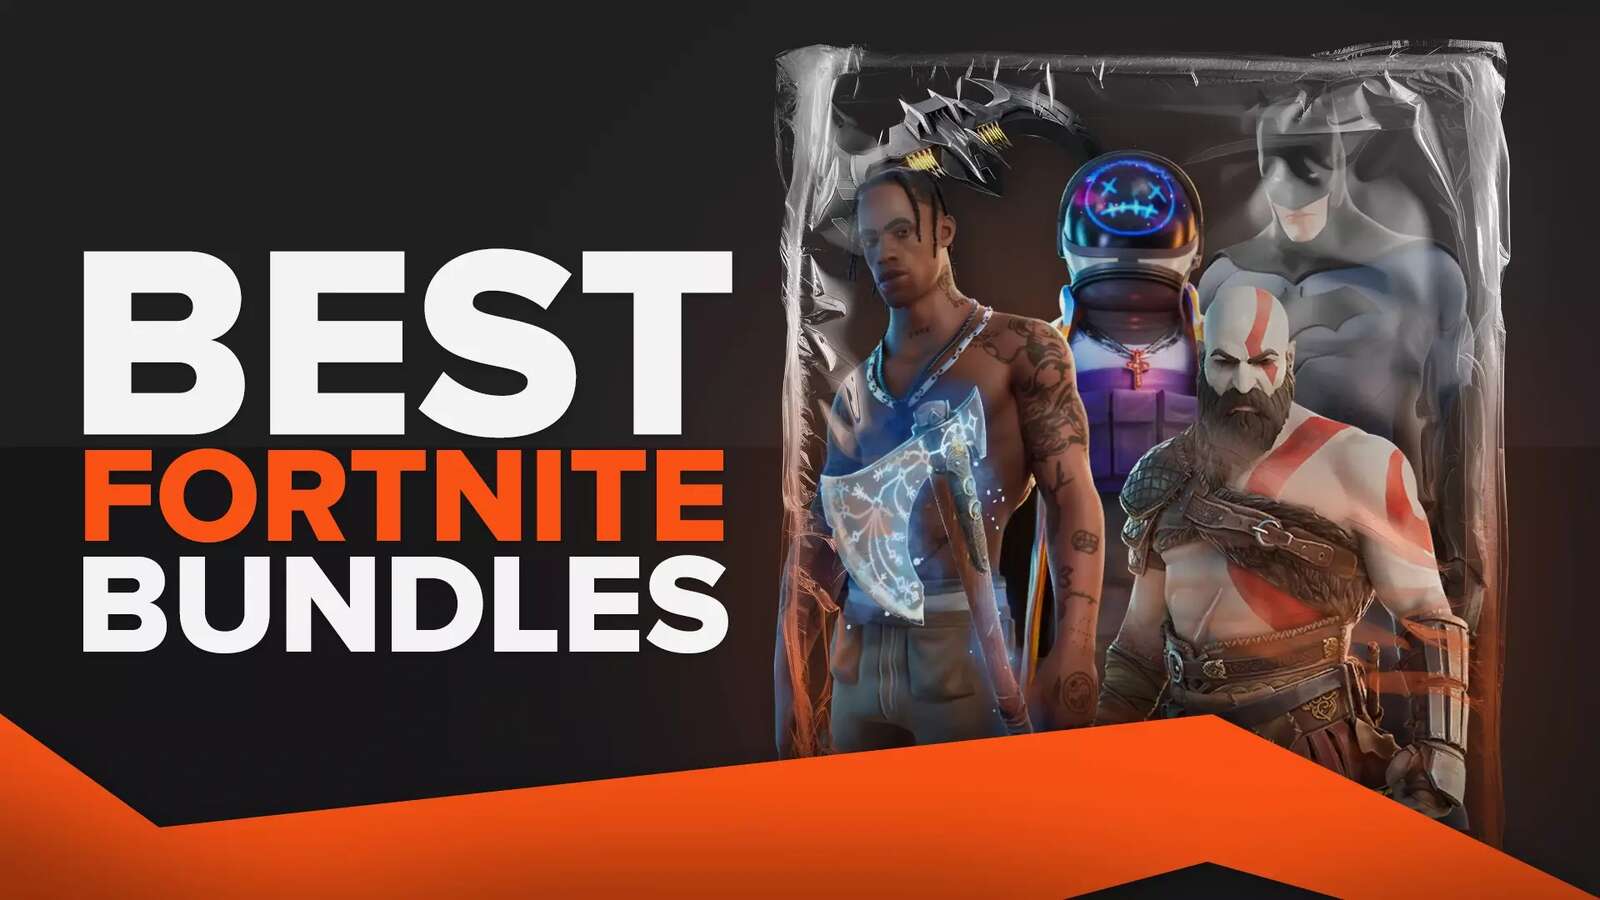 10 Best Fortnite Bundles Ever Released